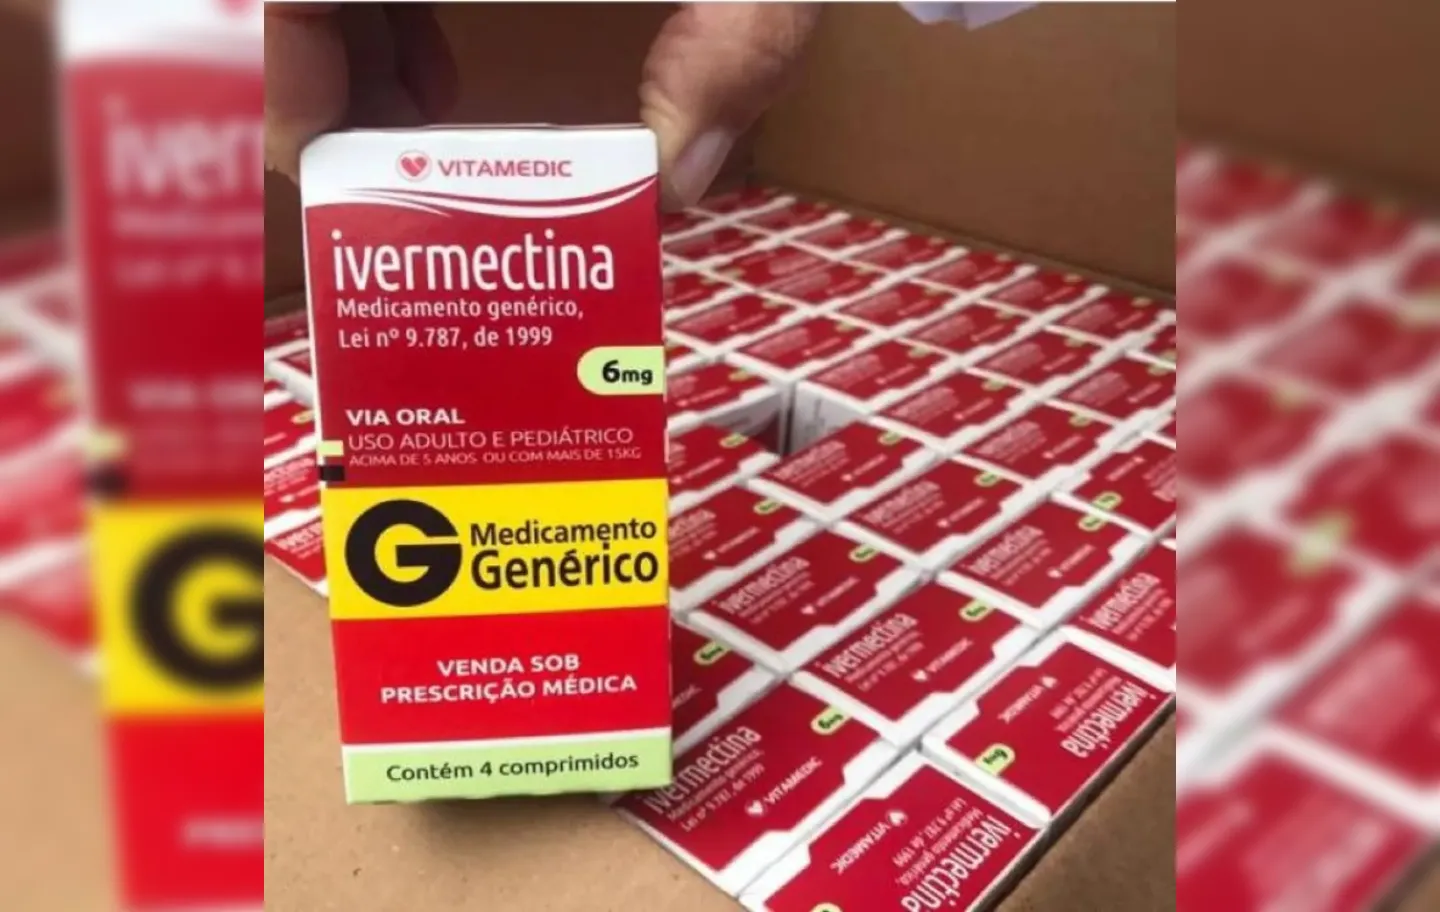 Medicamento não tem eficácia no tratamento contra Covid-19, segundo fabricante / Foto: Reprodução | Prefeitura de Itajaí